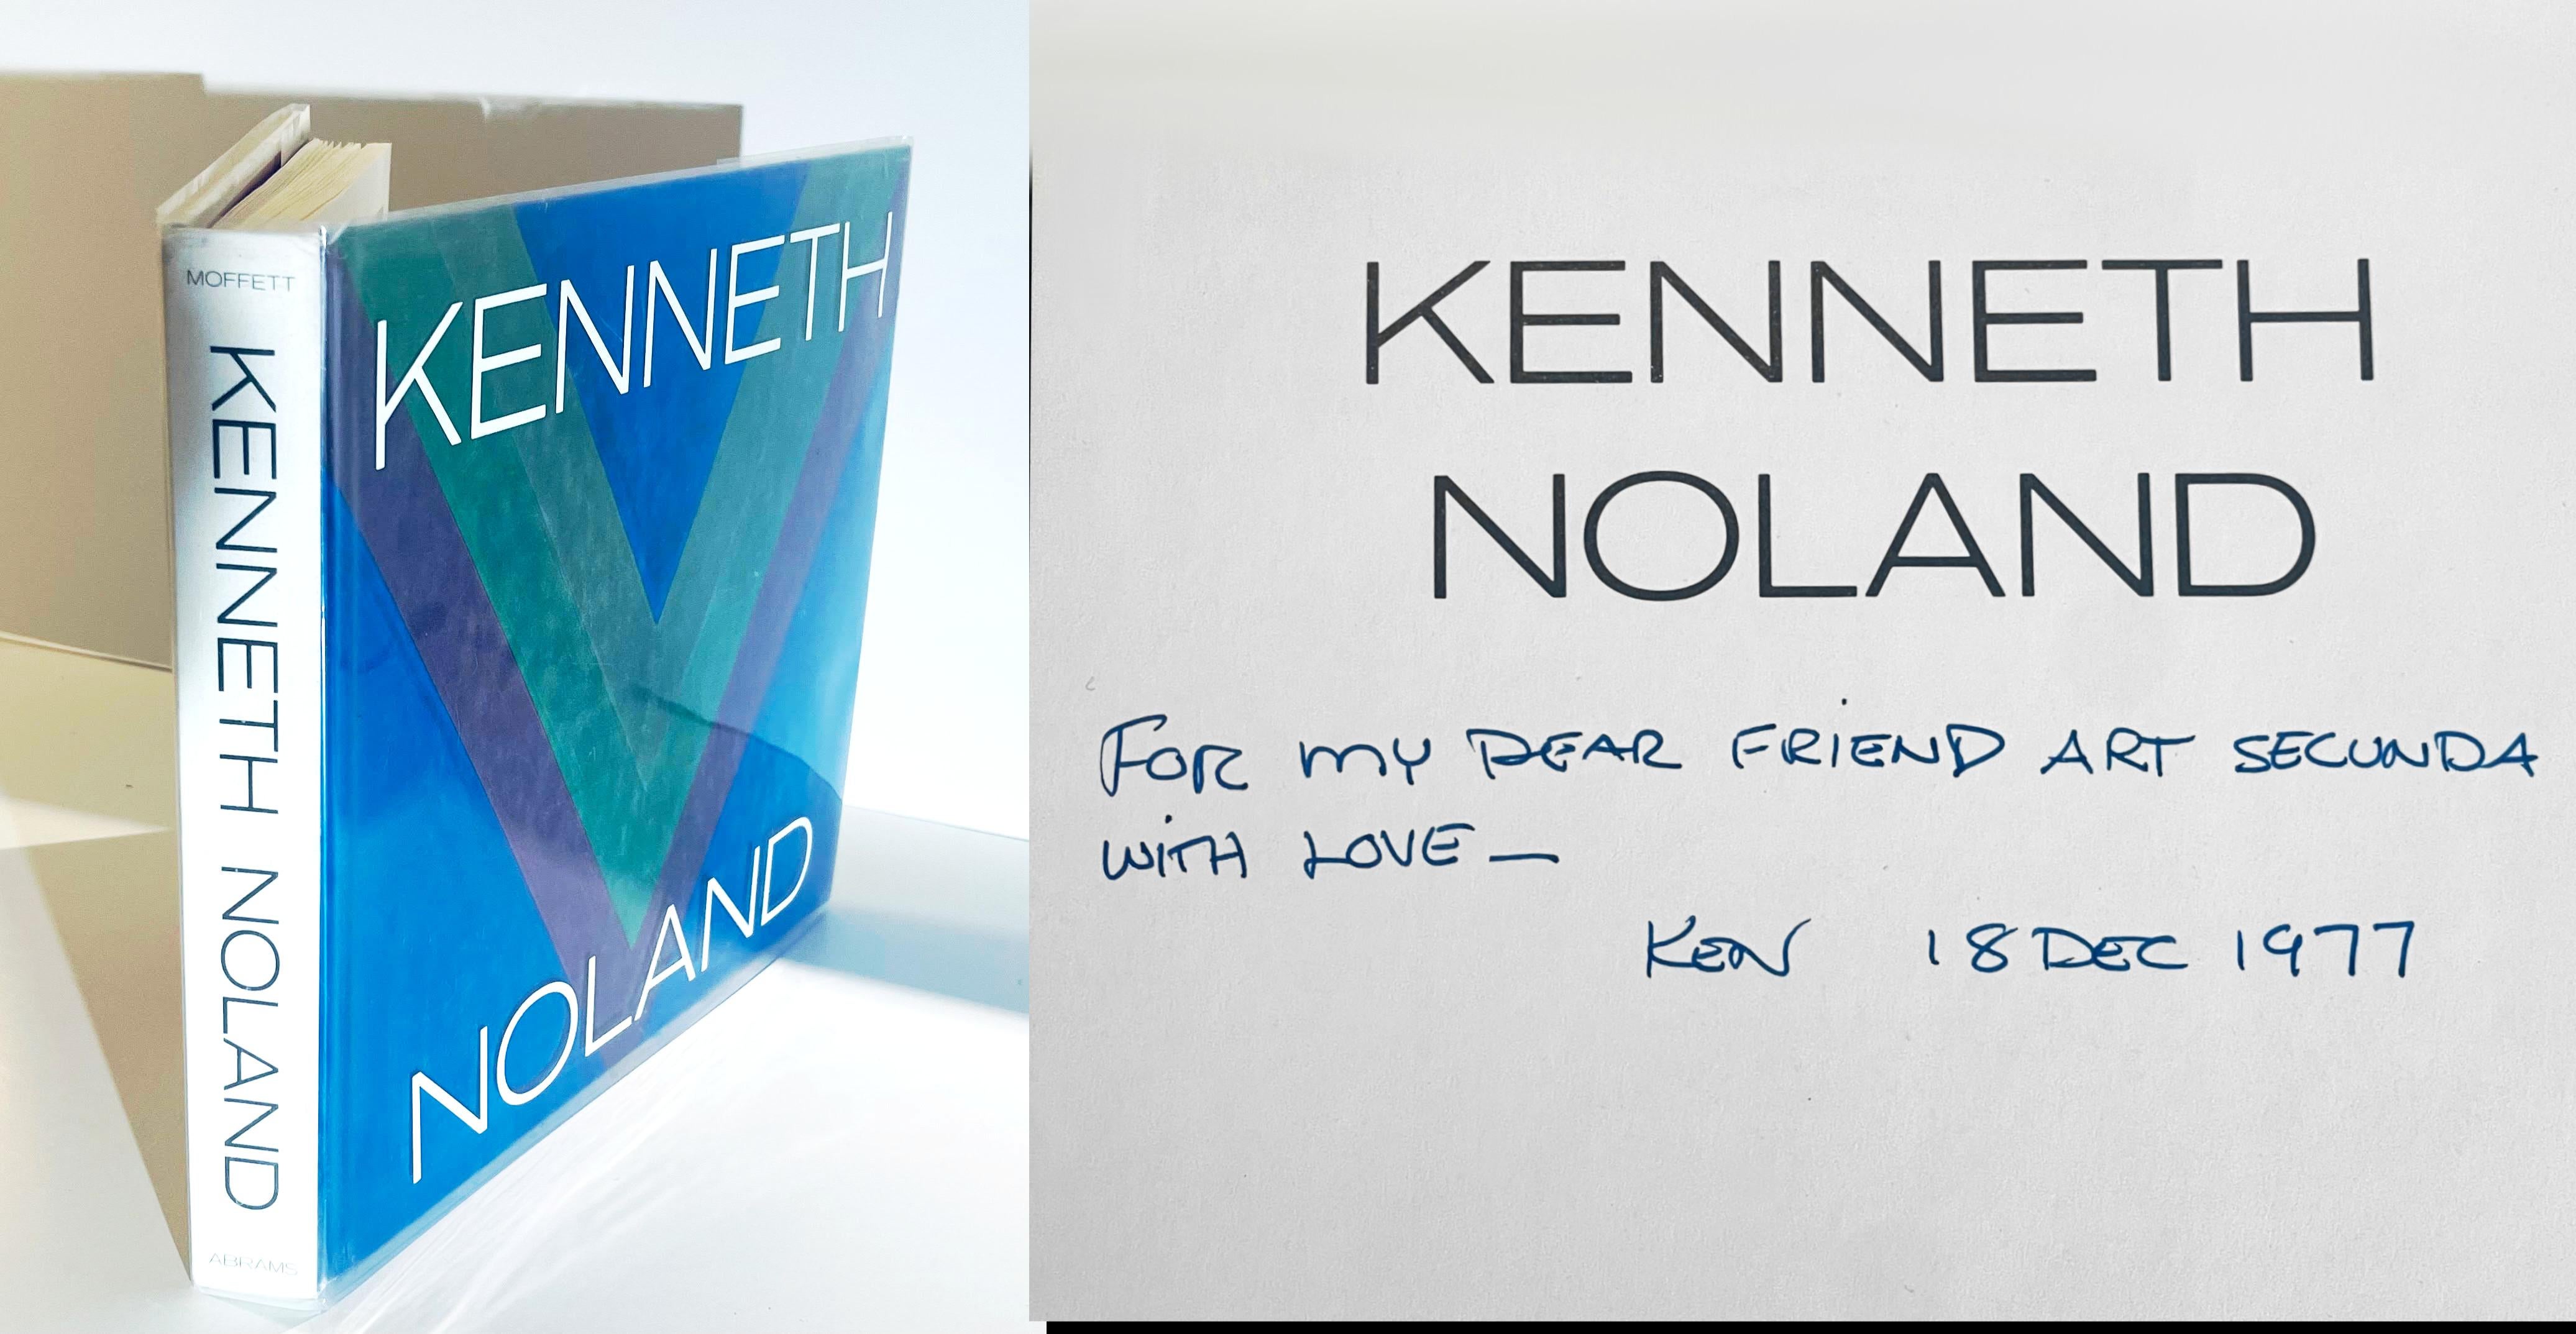 Livre : KENNETH NOLAND (signé à la main et chaleureusement inscrit à l'artiste Arthur Secunda)